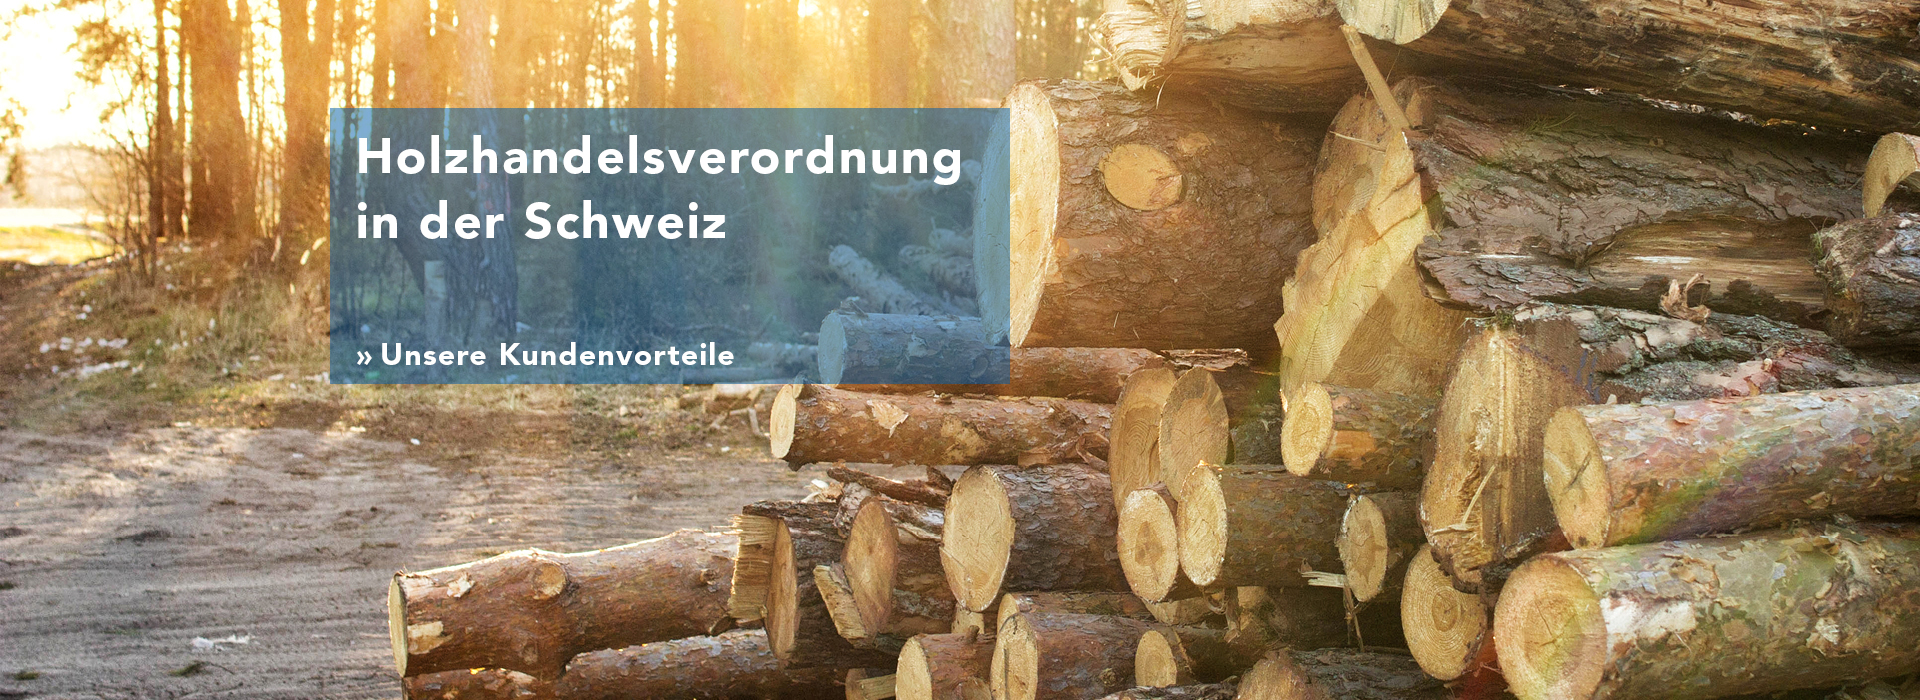 Holzhandelsverordnung in der Schweiz